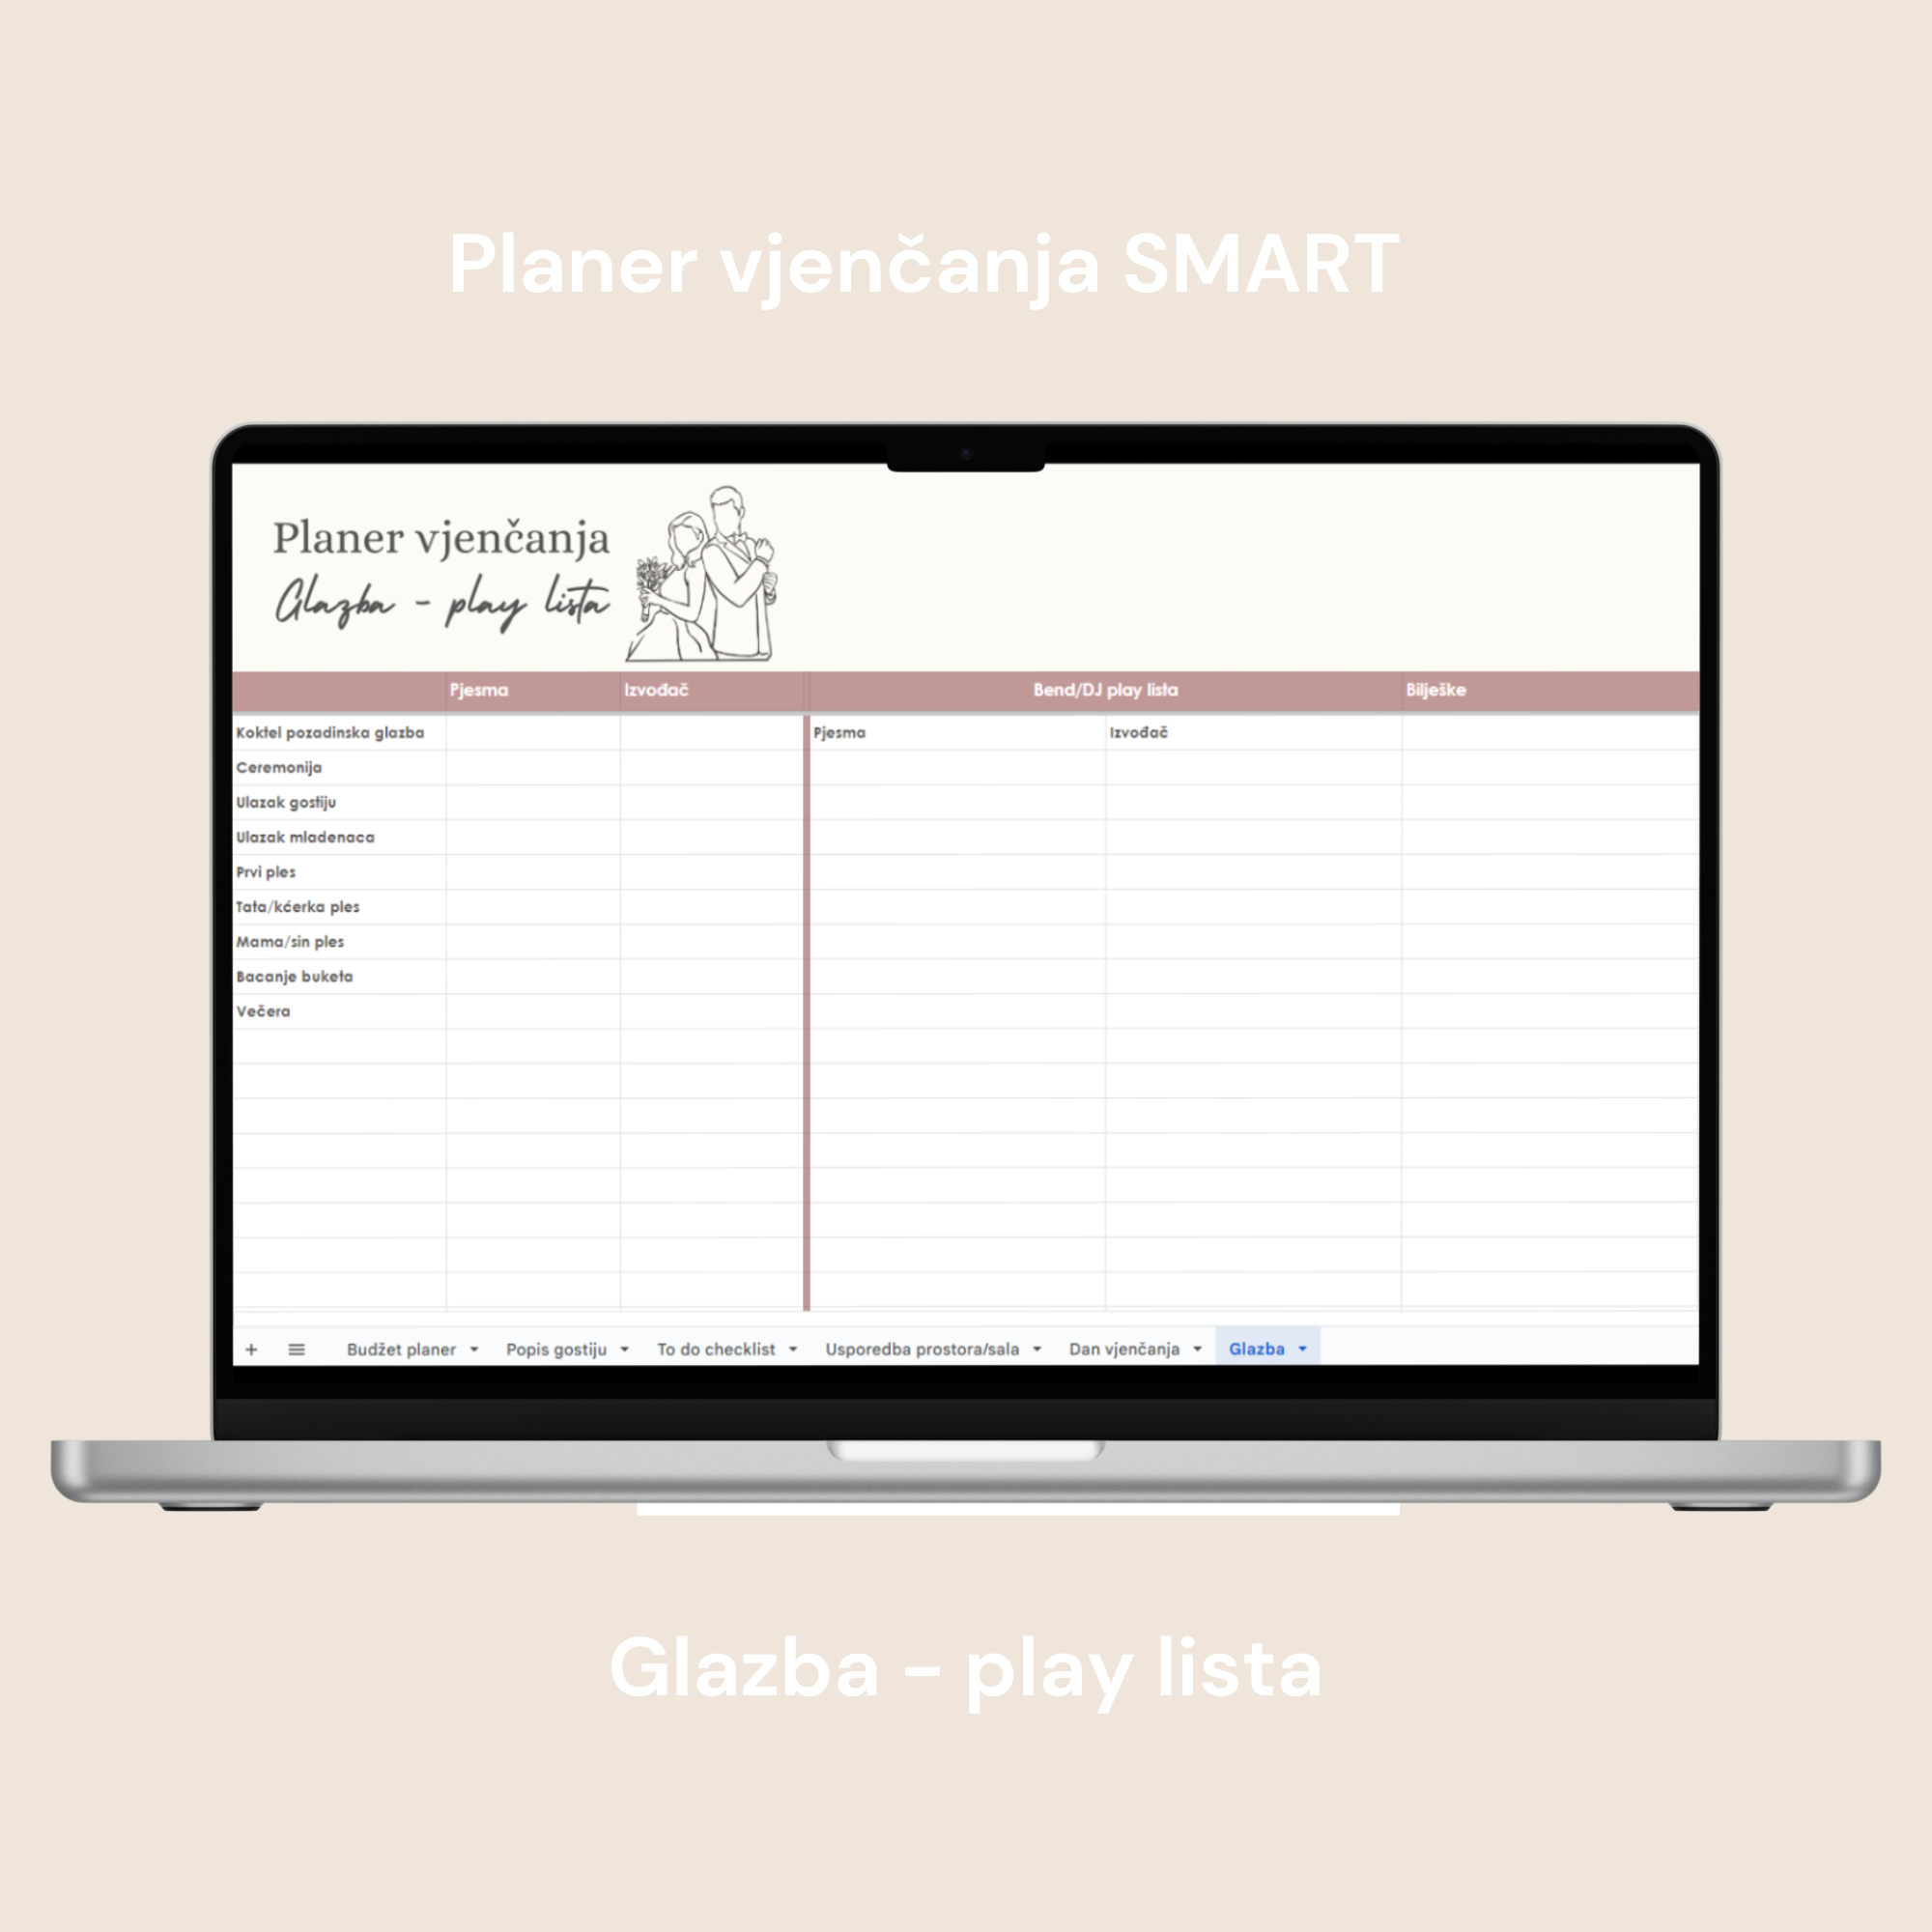 Planer vjenčanja SMART digitalni planer za google doc, tablica glazbu i play liste